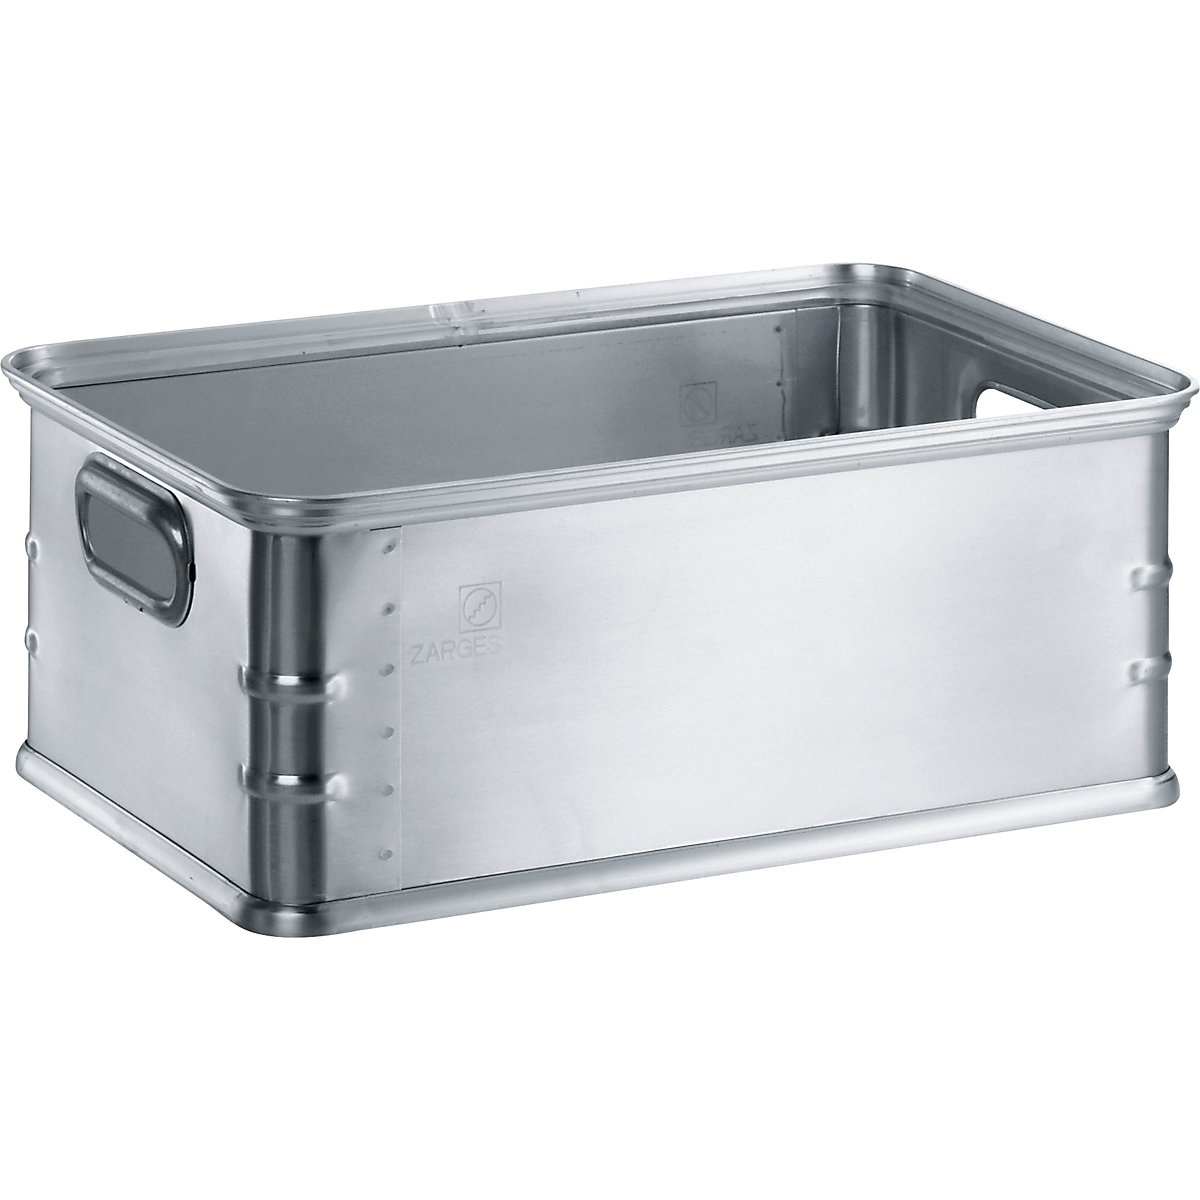 Transportni in podstavni voziček za posode za zlaganje iz aluminija – ZARGES